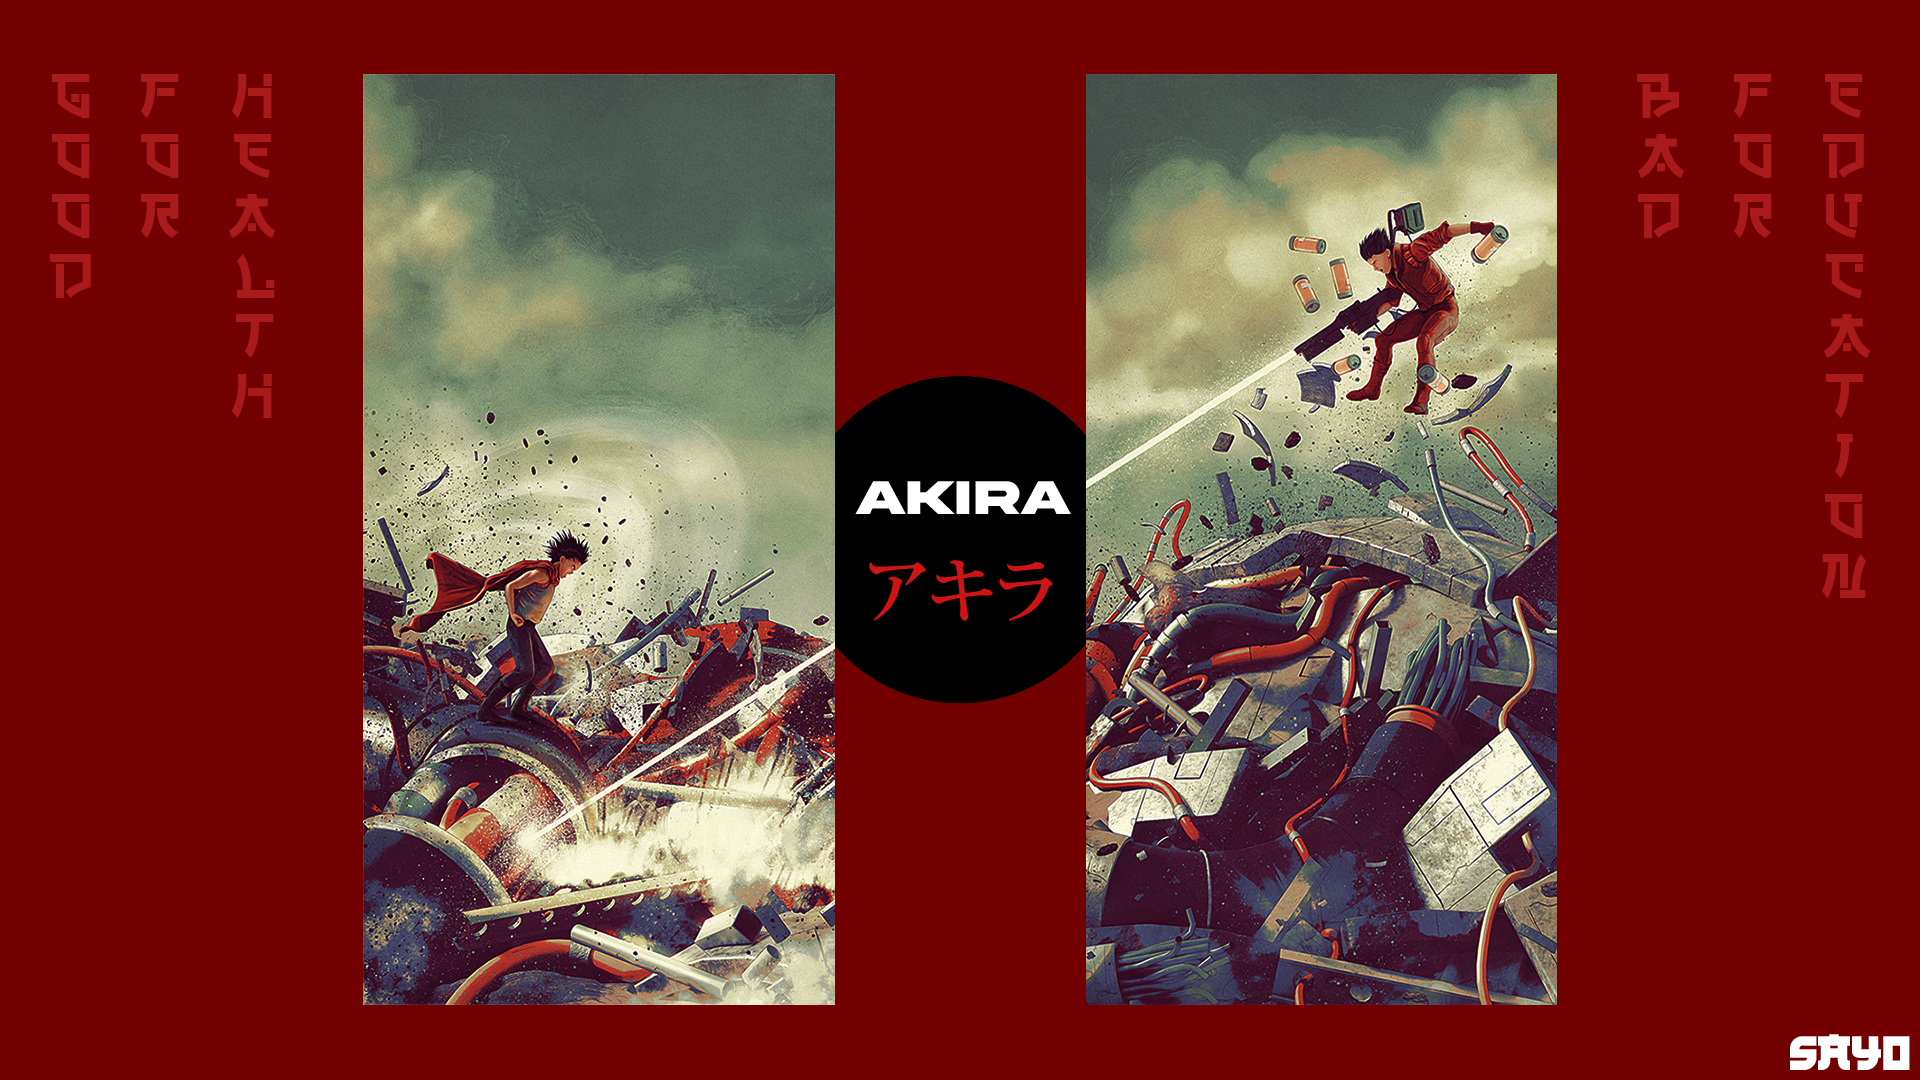 Akira anime series in the works from Katsuhiro Otomo - SciFiNow